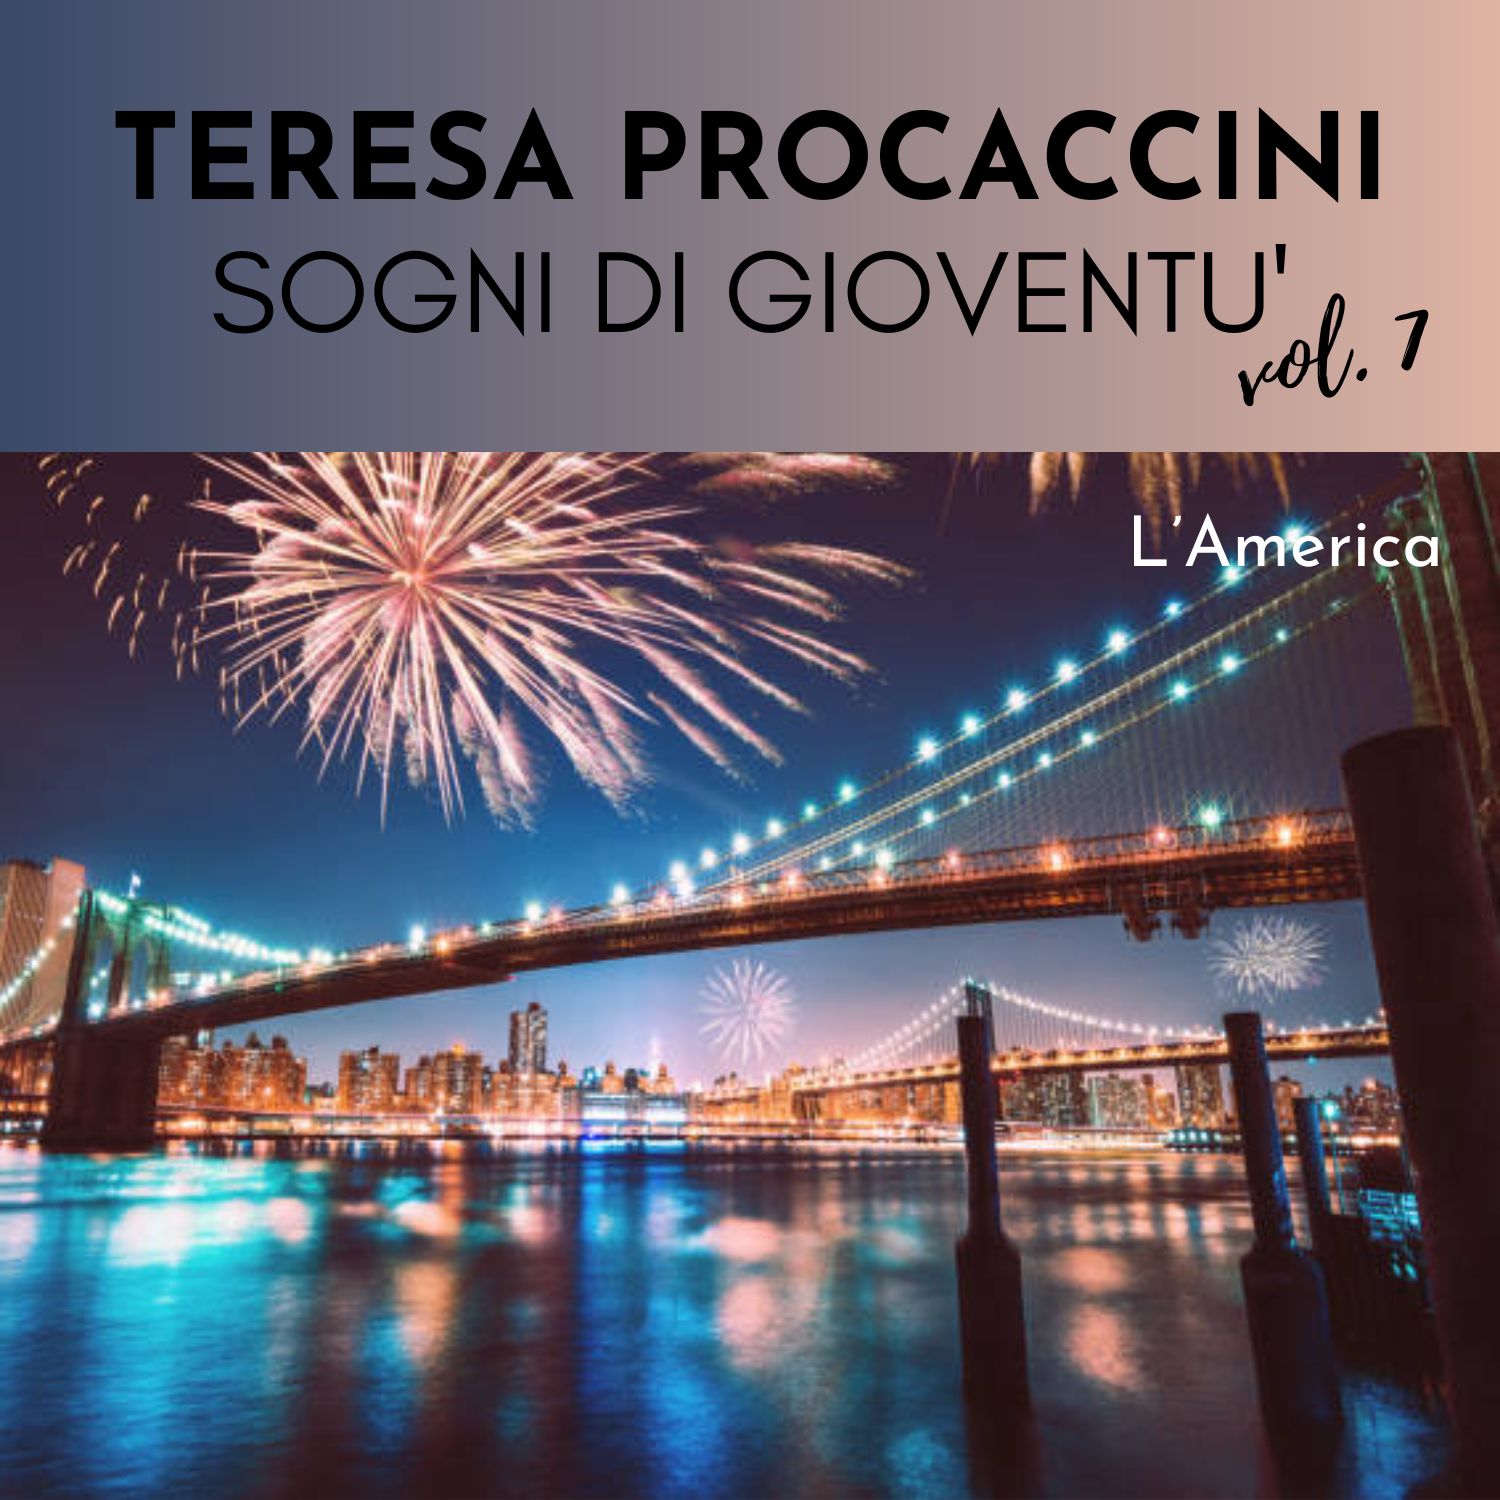 Teresa Procaccini: Sogni di gioventù, Vol. 7 (L'America)